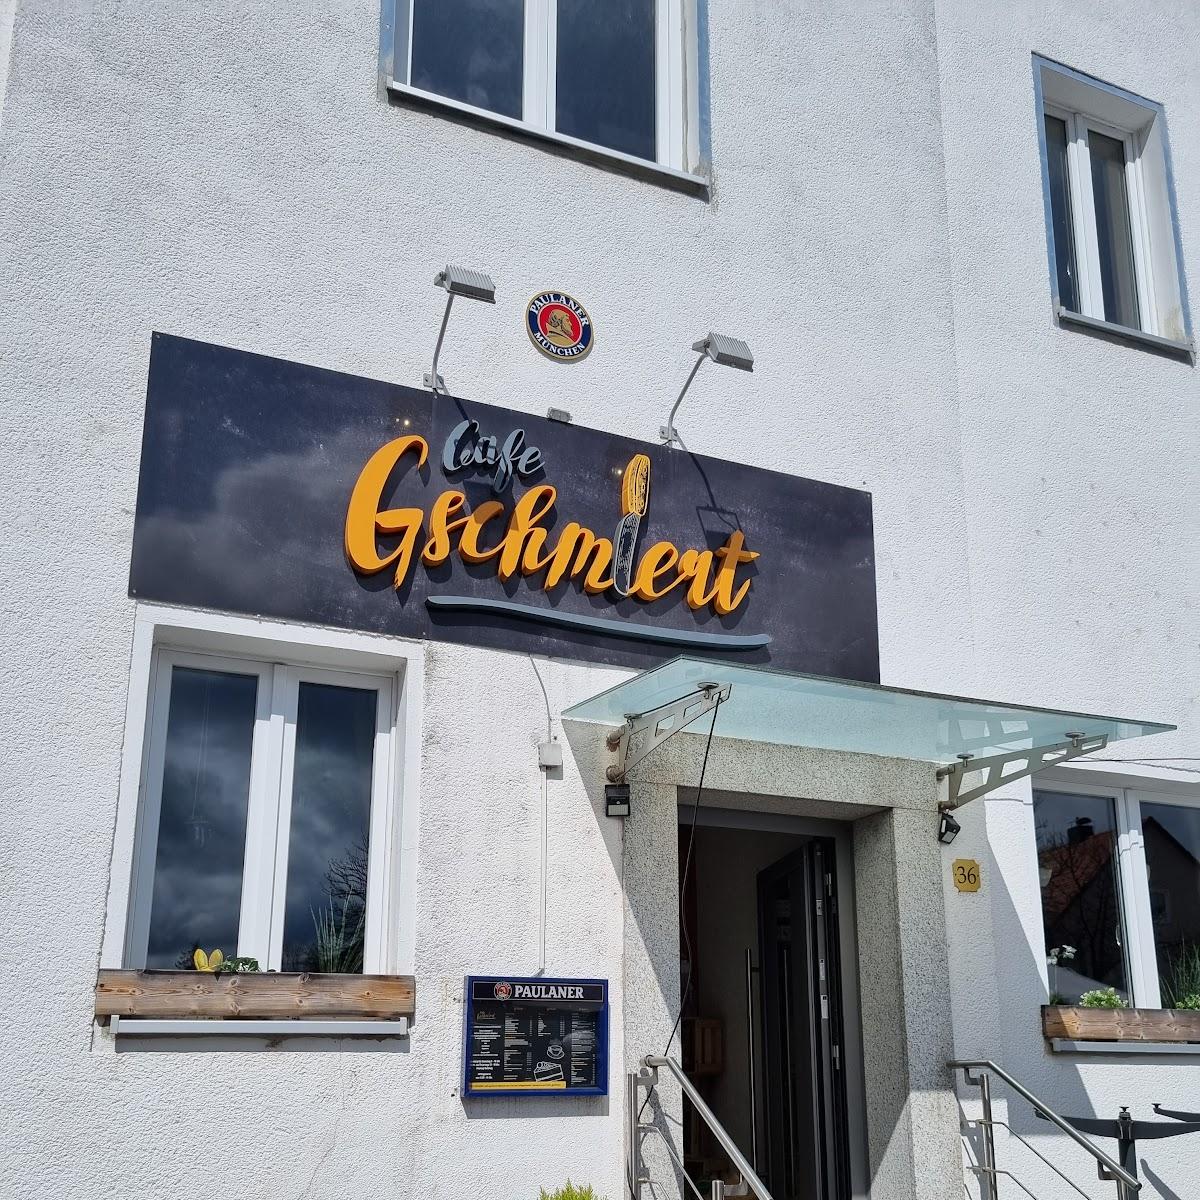 Restaurant "Café Gschmiert" in Neustadt an der Waldnaab